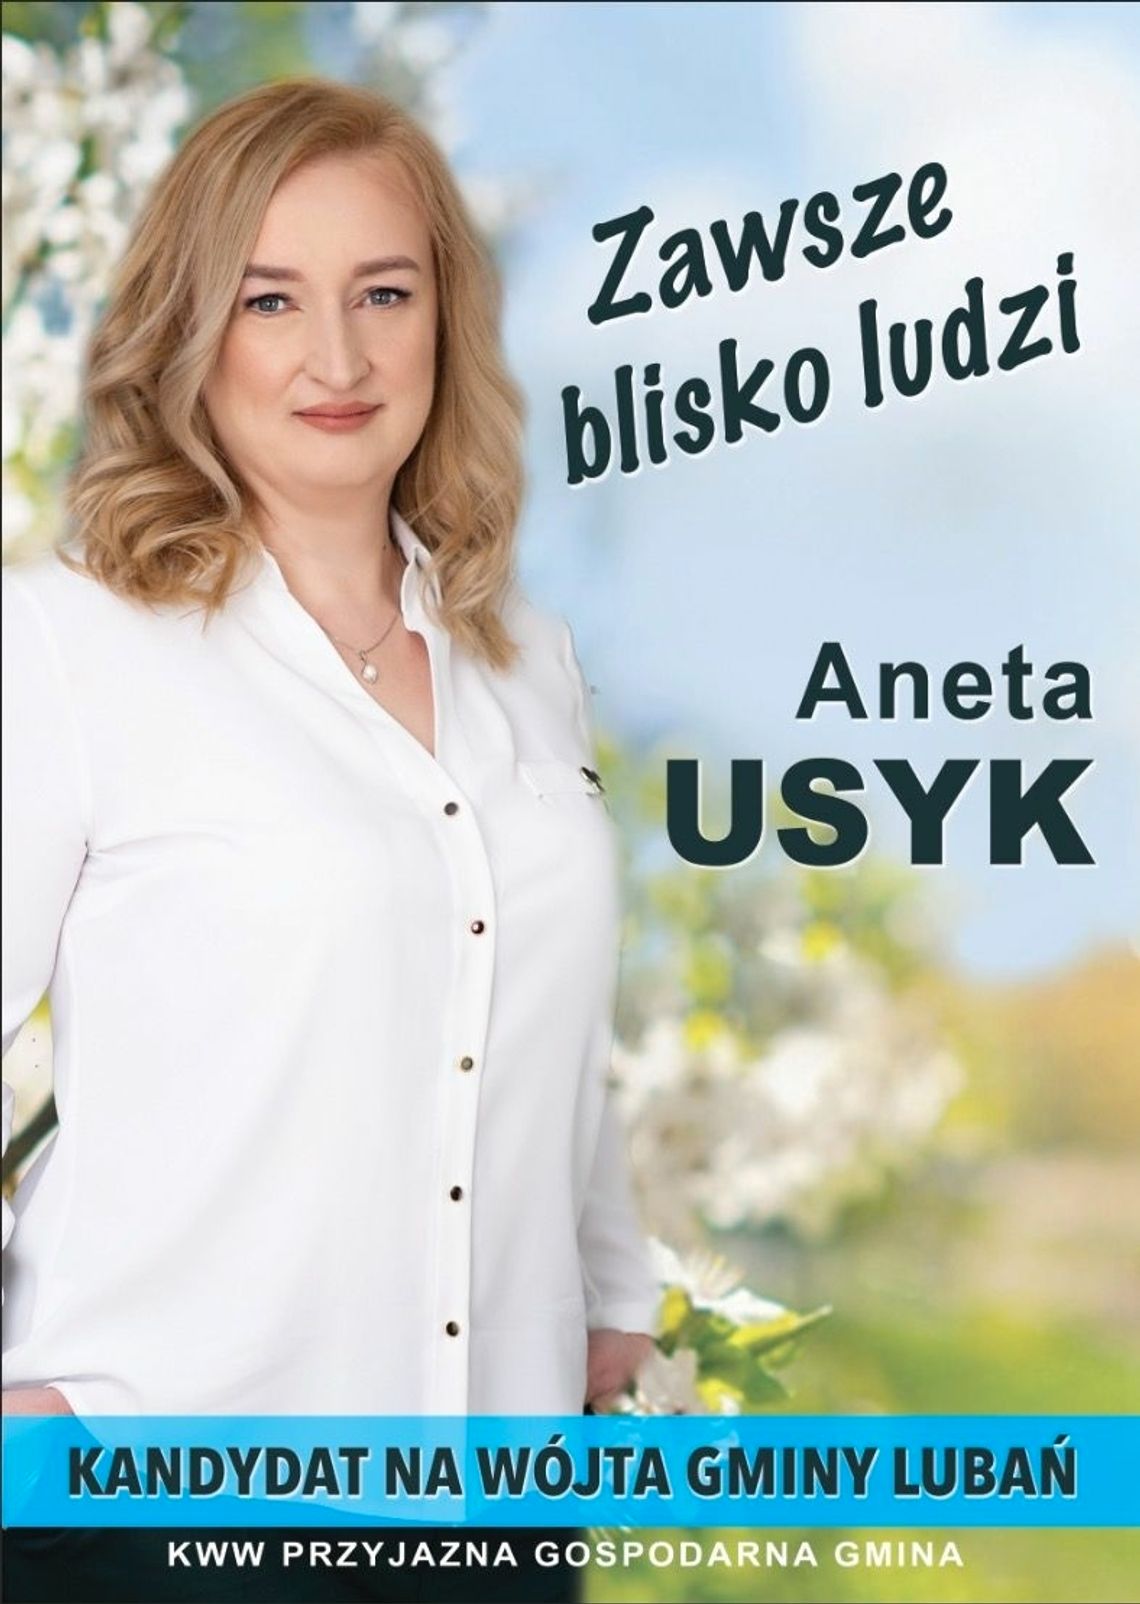 Aneta Usyk, kandydatka na Wójta Gminy Lubań zaprasza na wybory